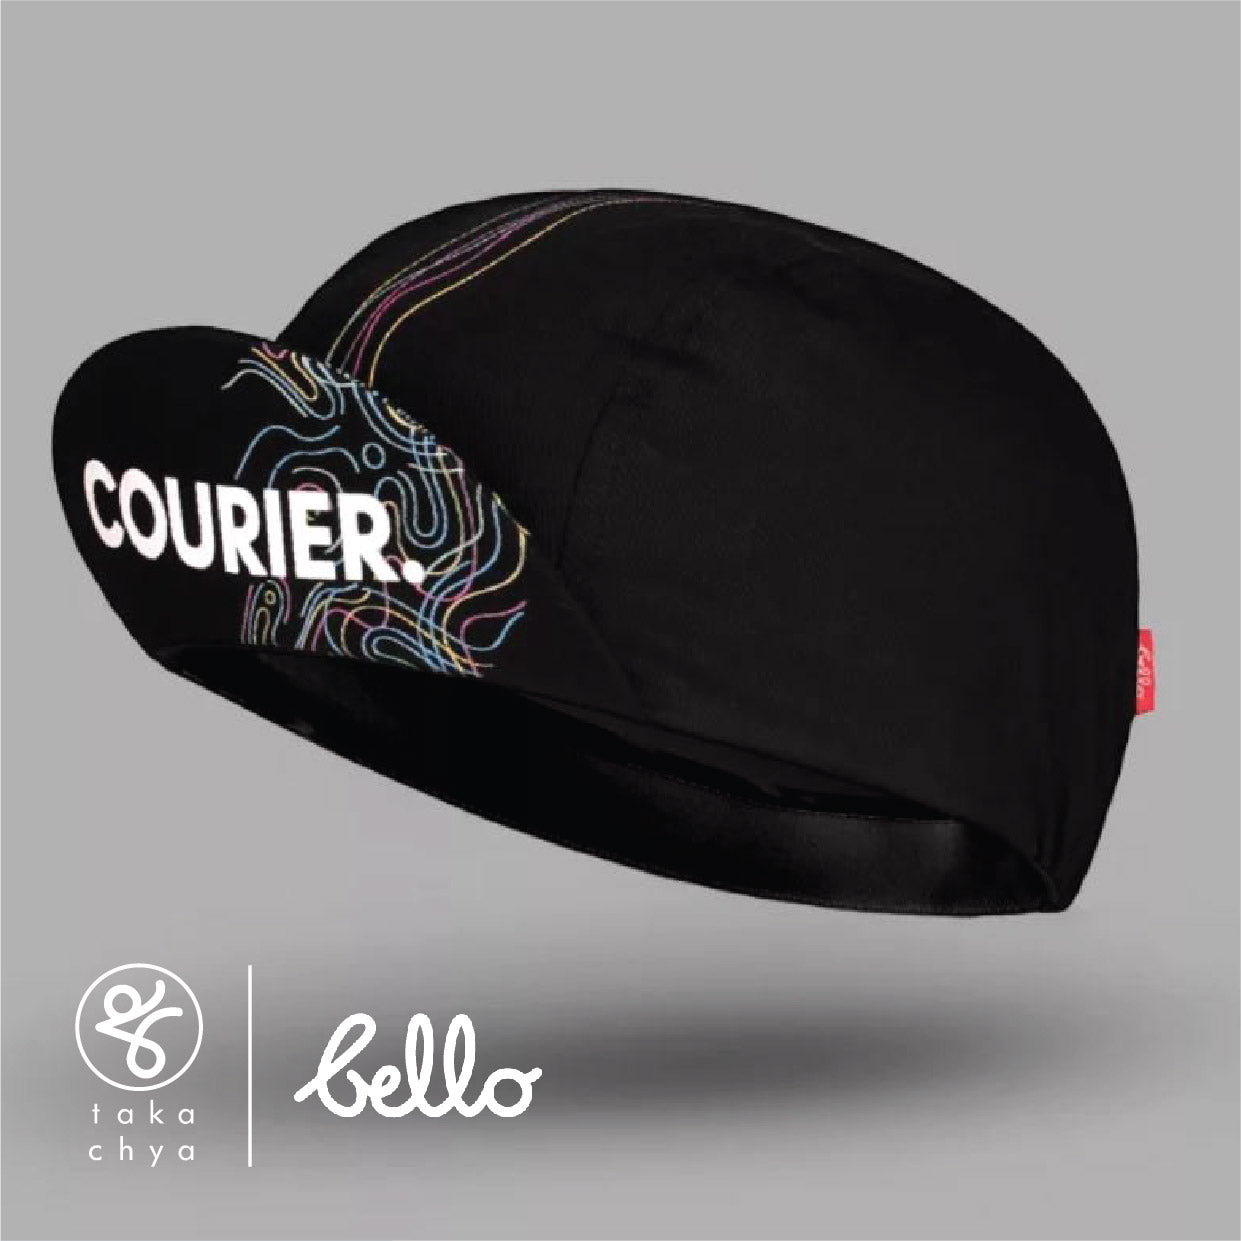 Courier - Bello Cyclist Designer Collaboration Cycling Cap